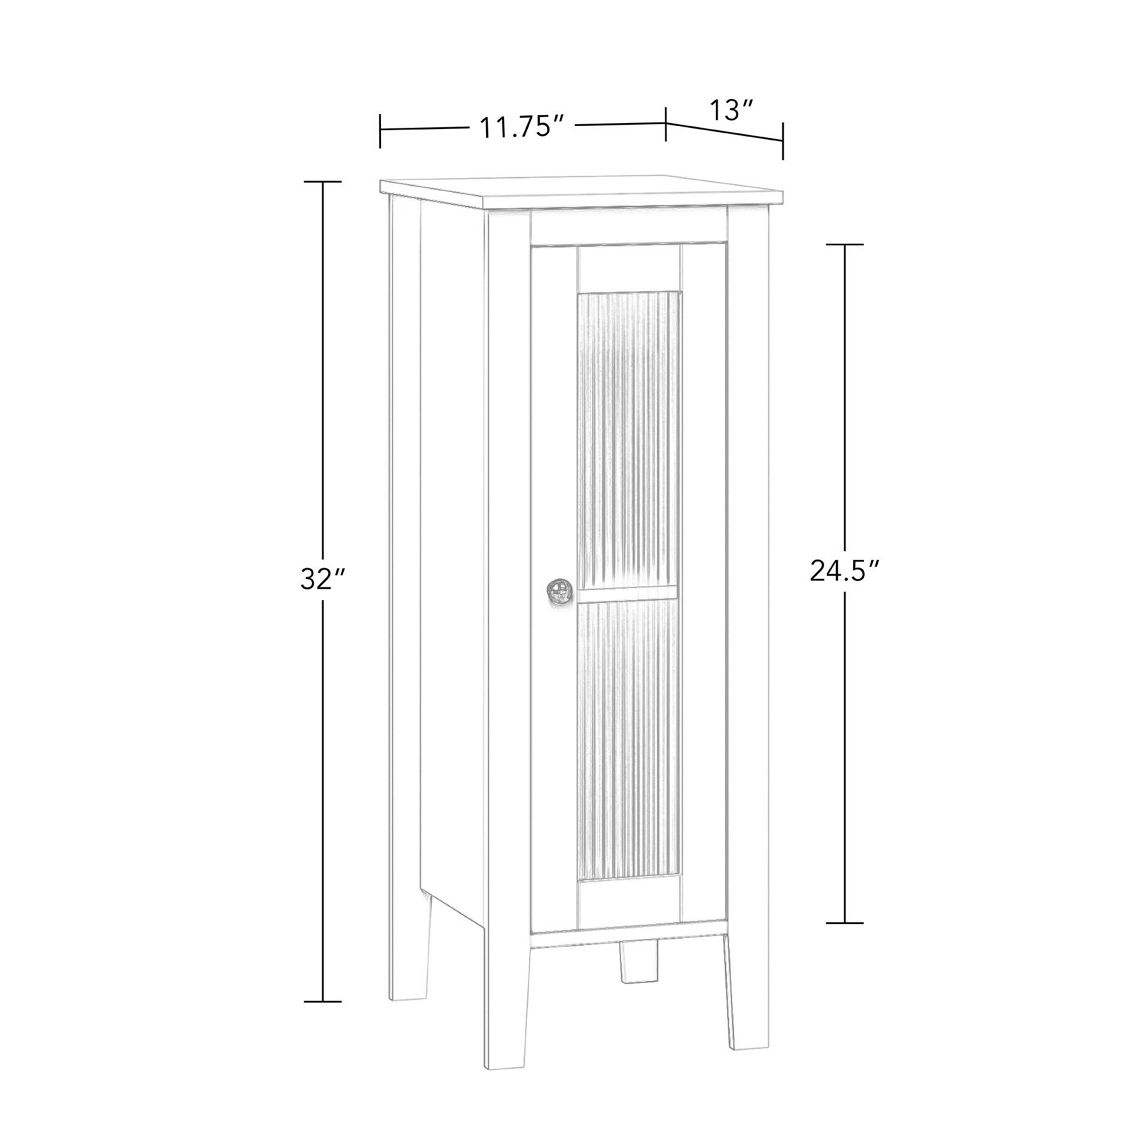 RiverRidge Prescott Single Door Floor Cabinet - Image 3 of 5